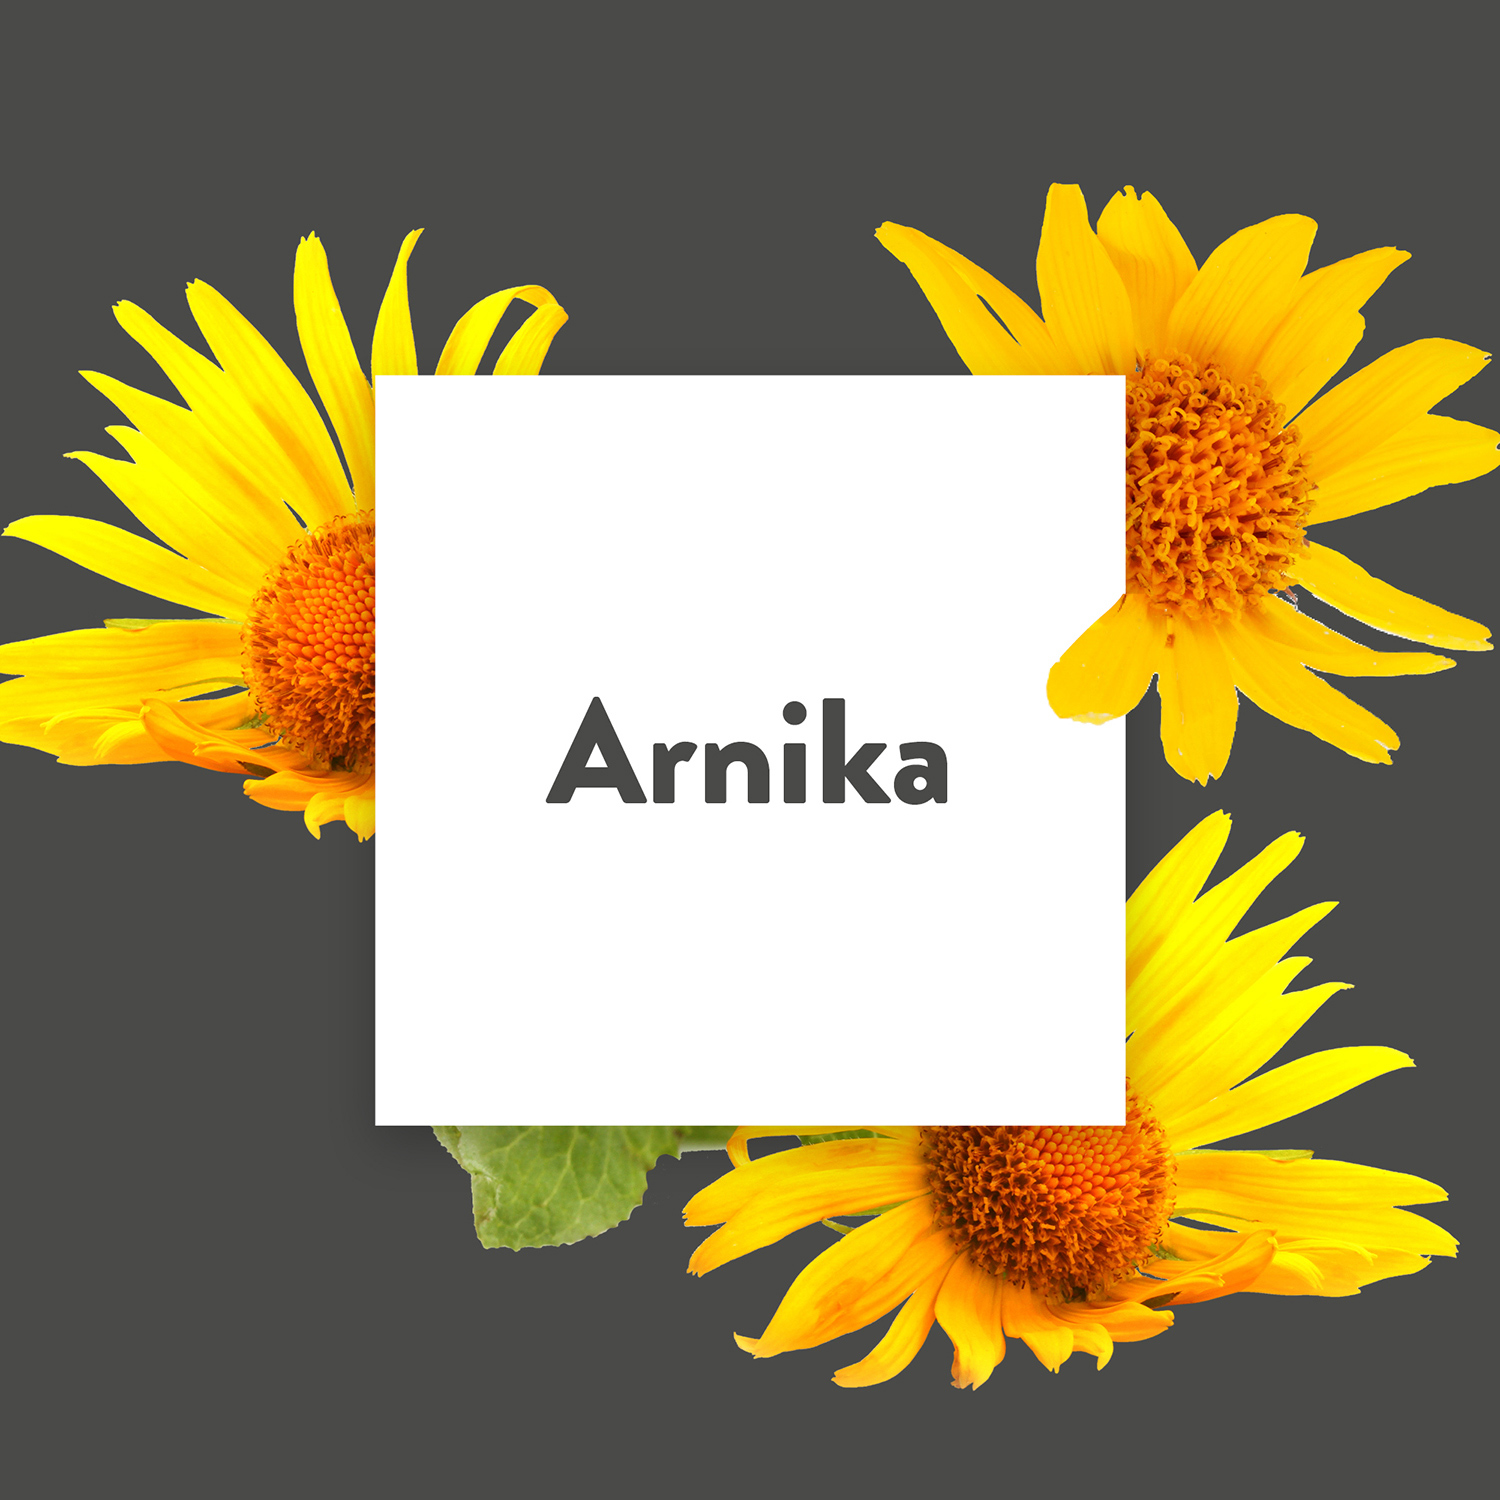 Pflanze des Monats: Arnika